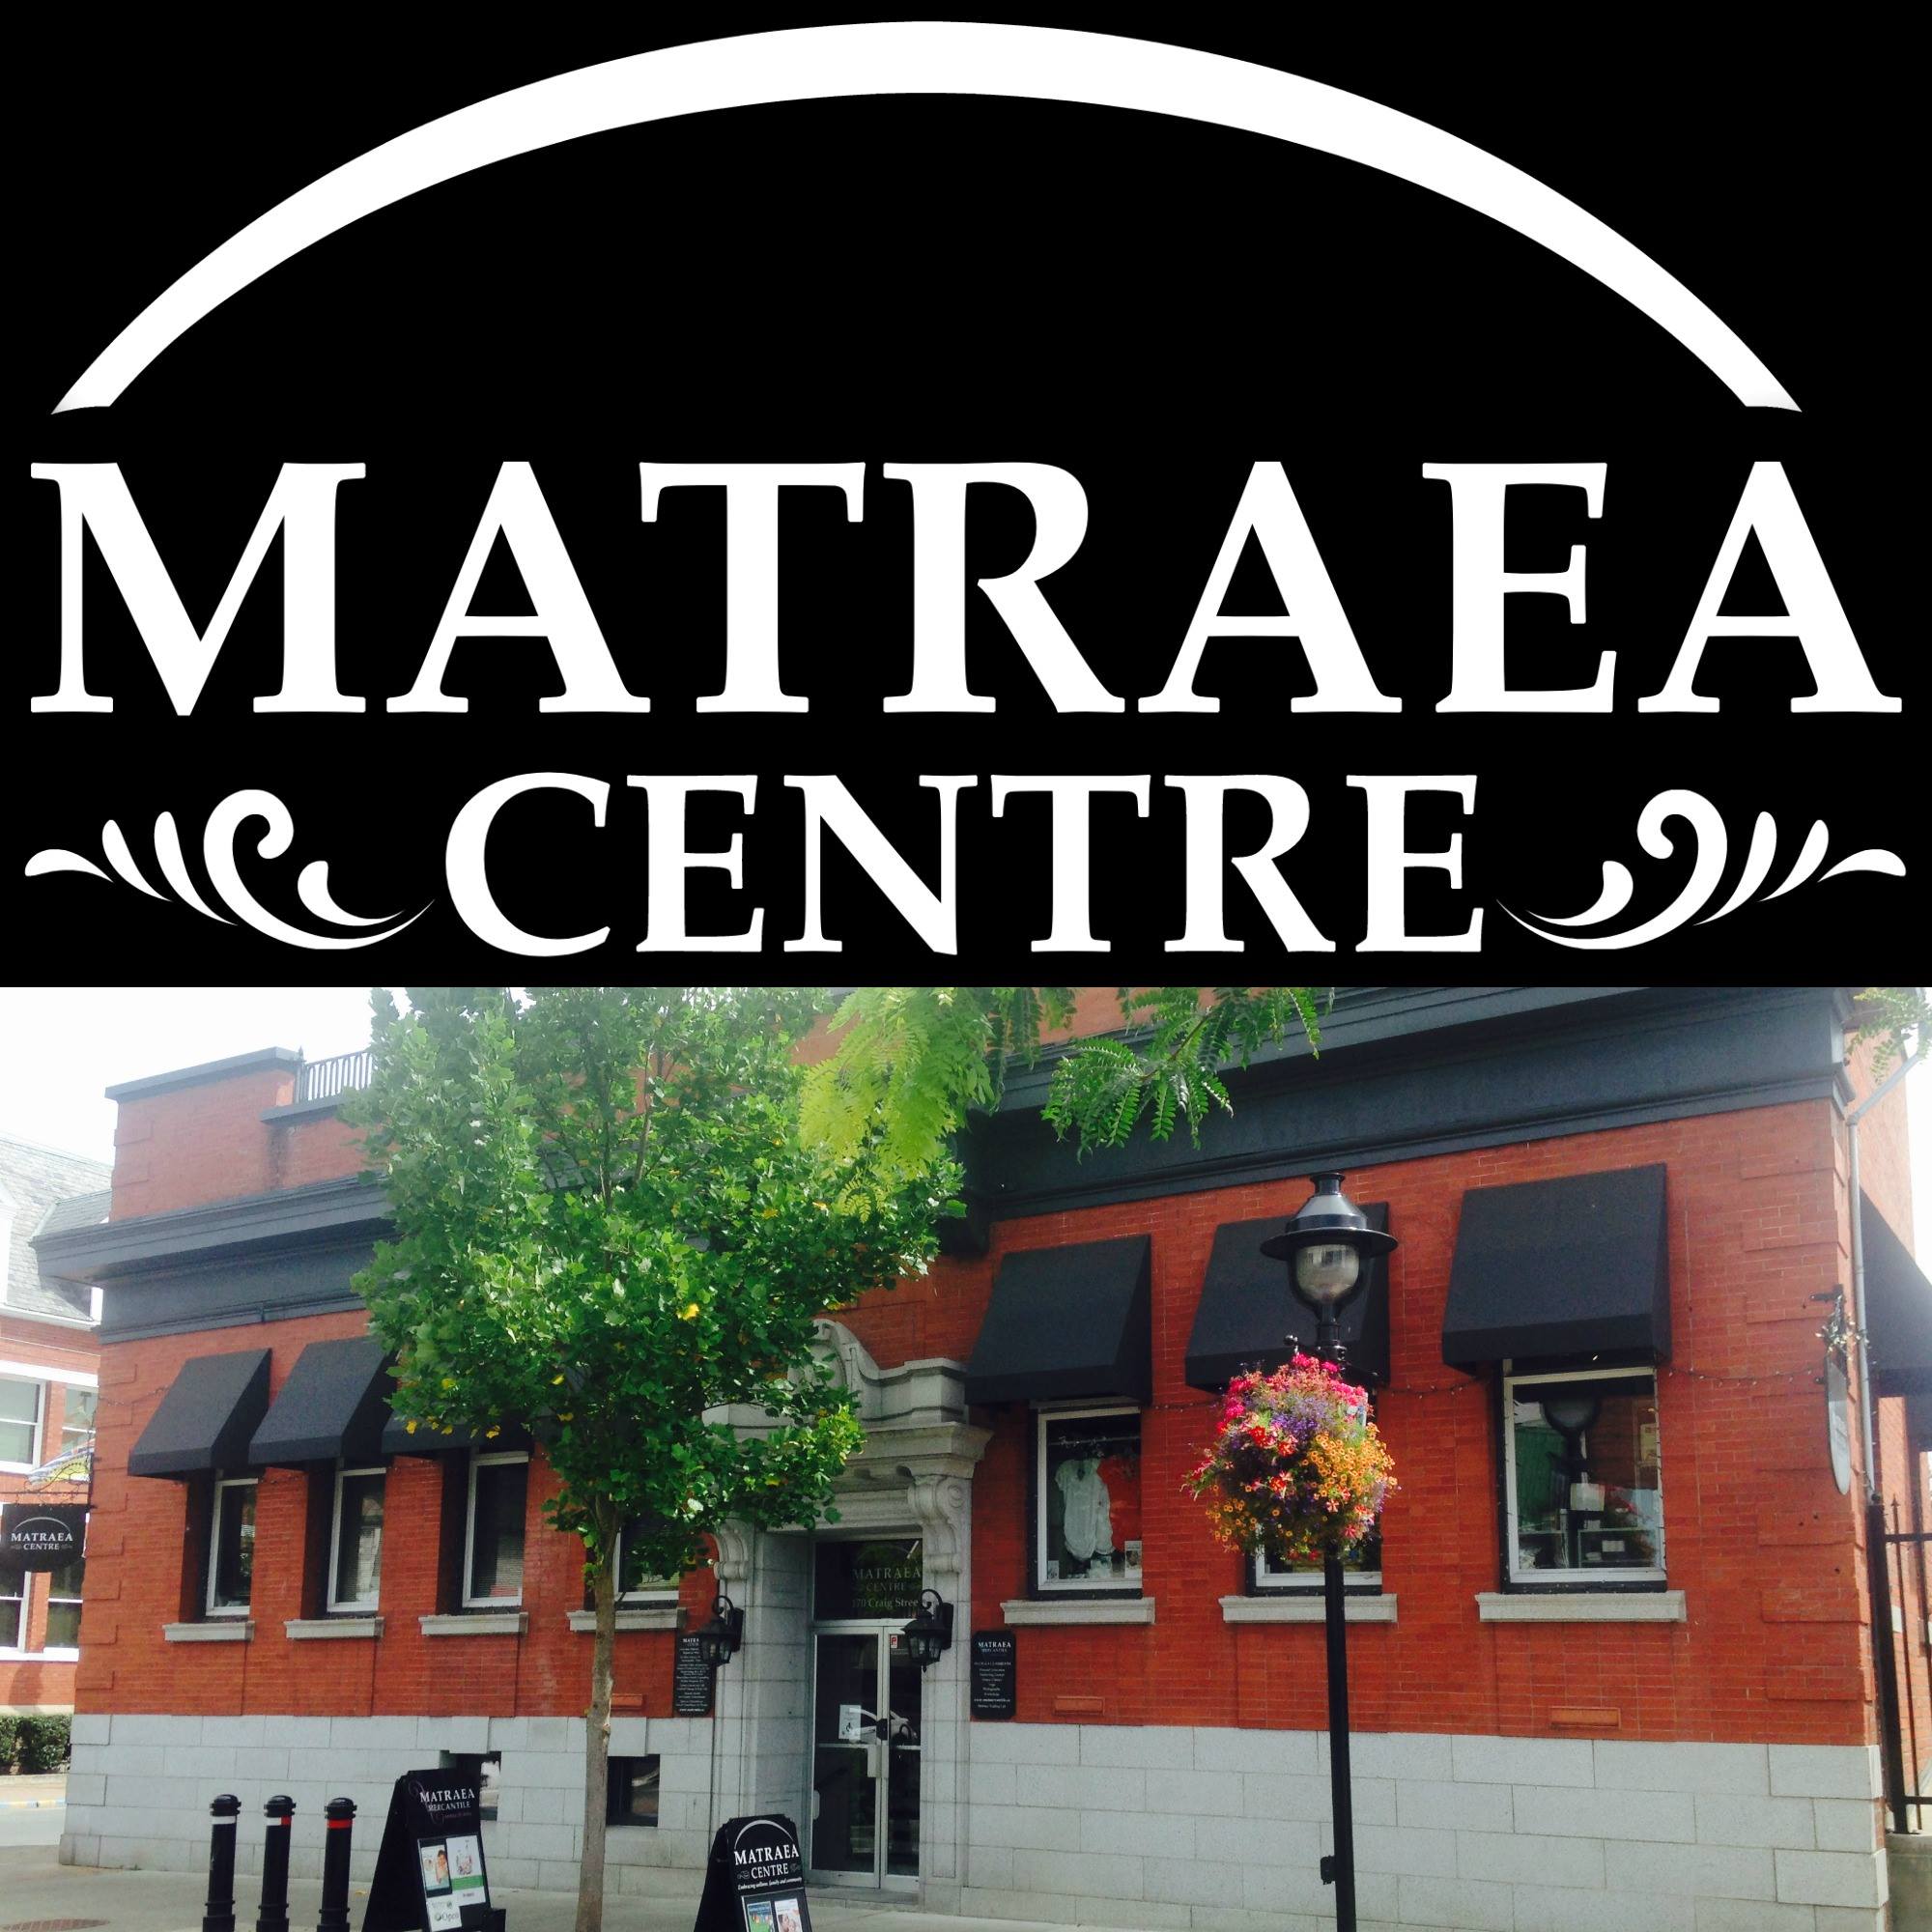 Matraea Centre